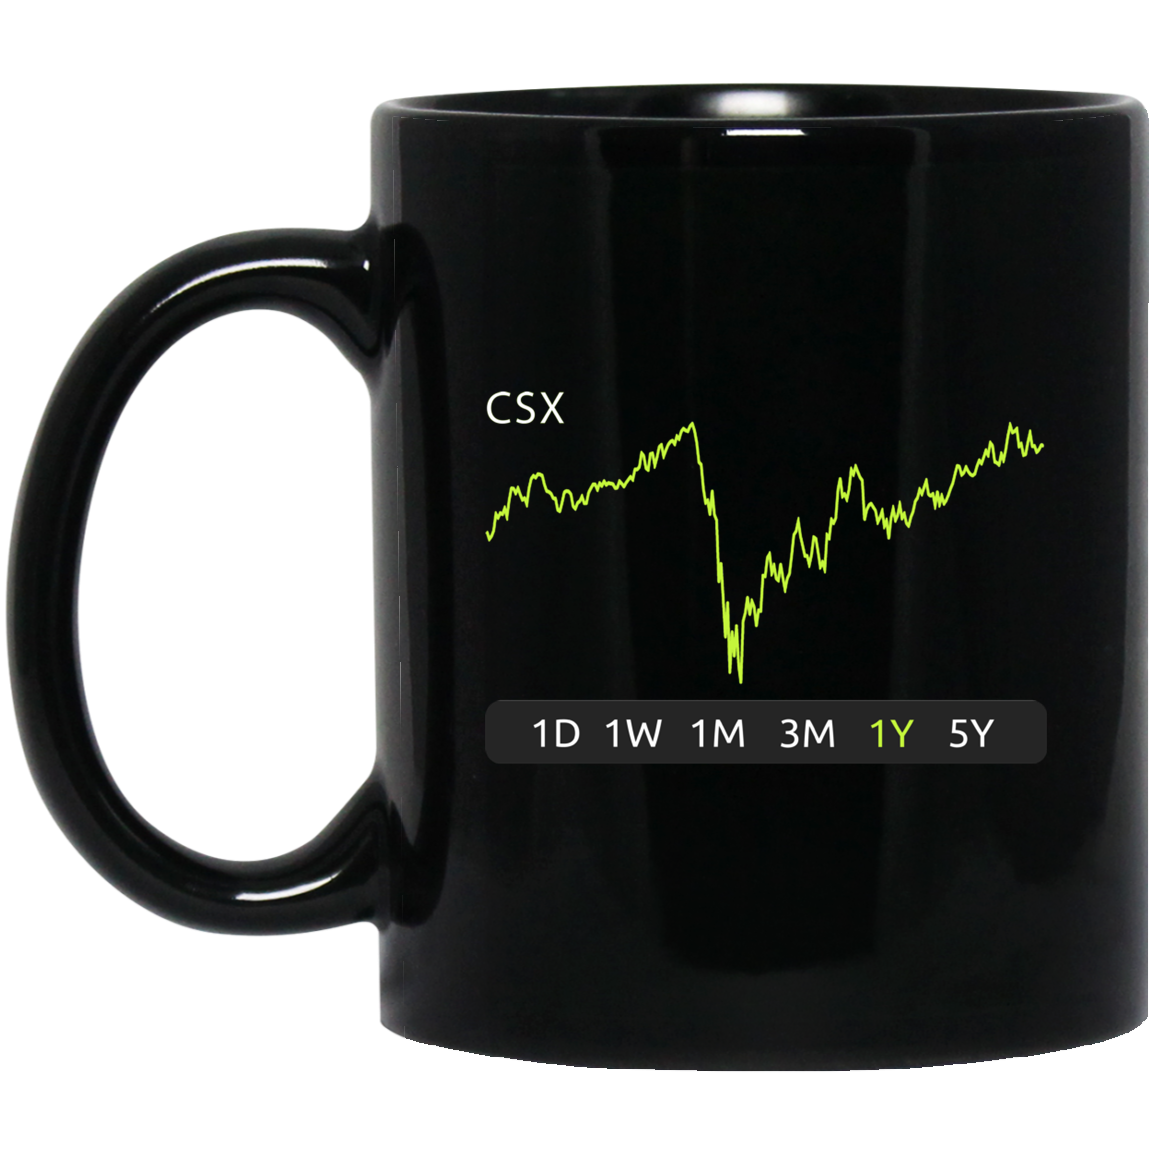 CSX Stock 1y Mug